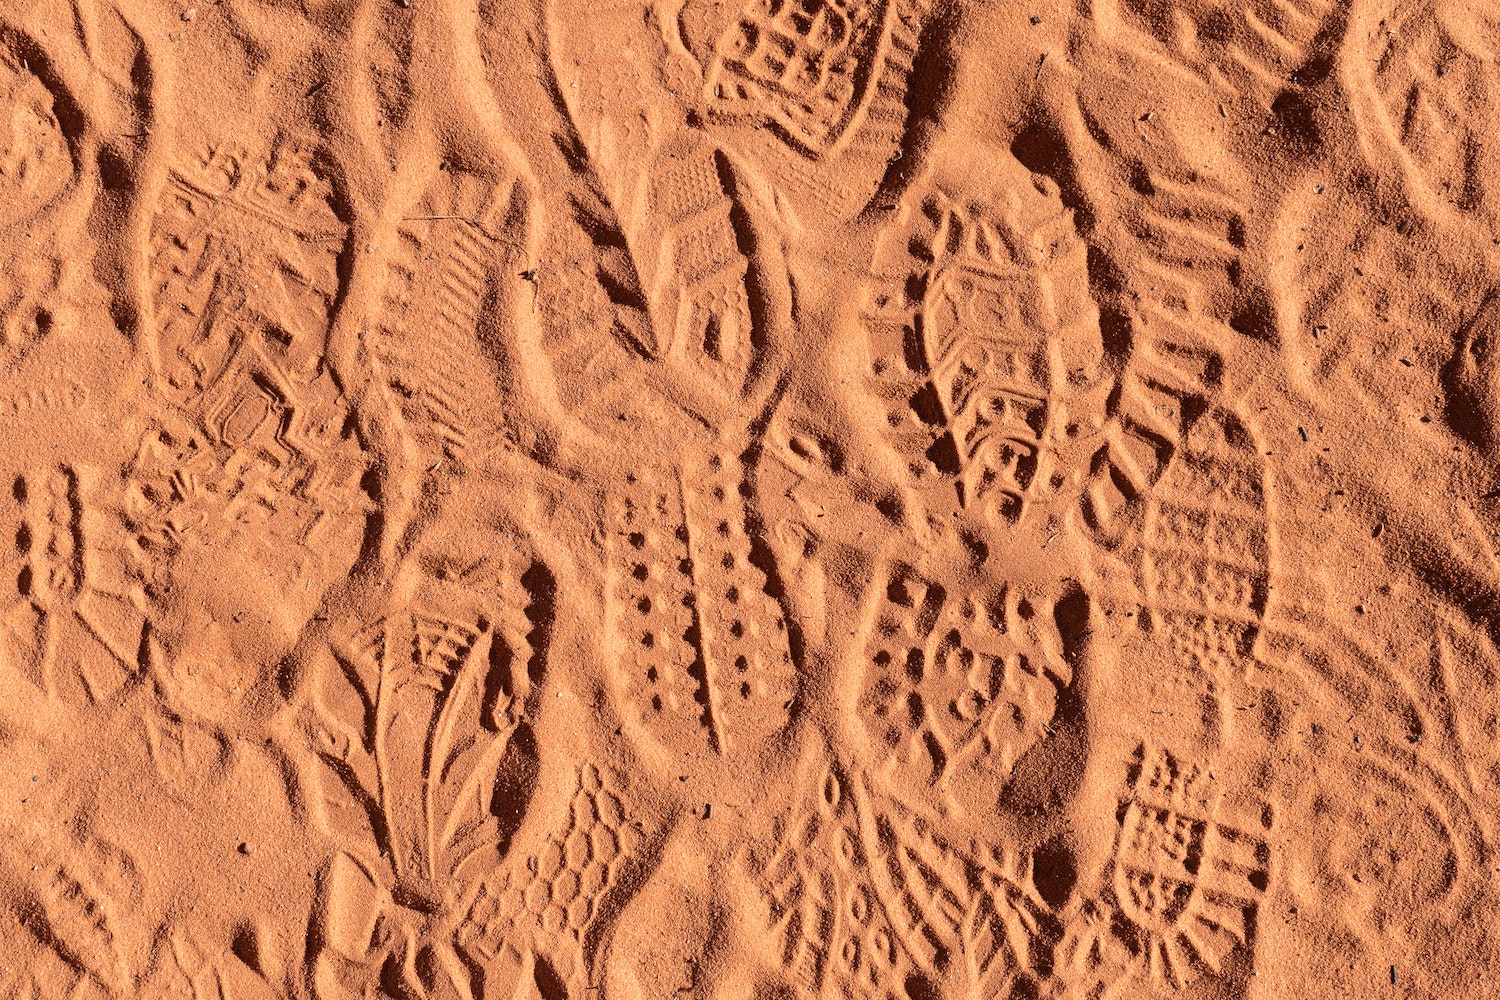 footprints in the orange dirt of utah